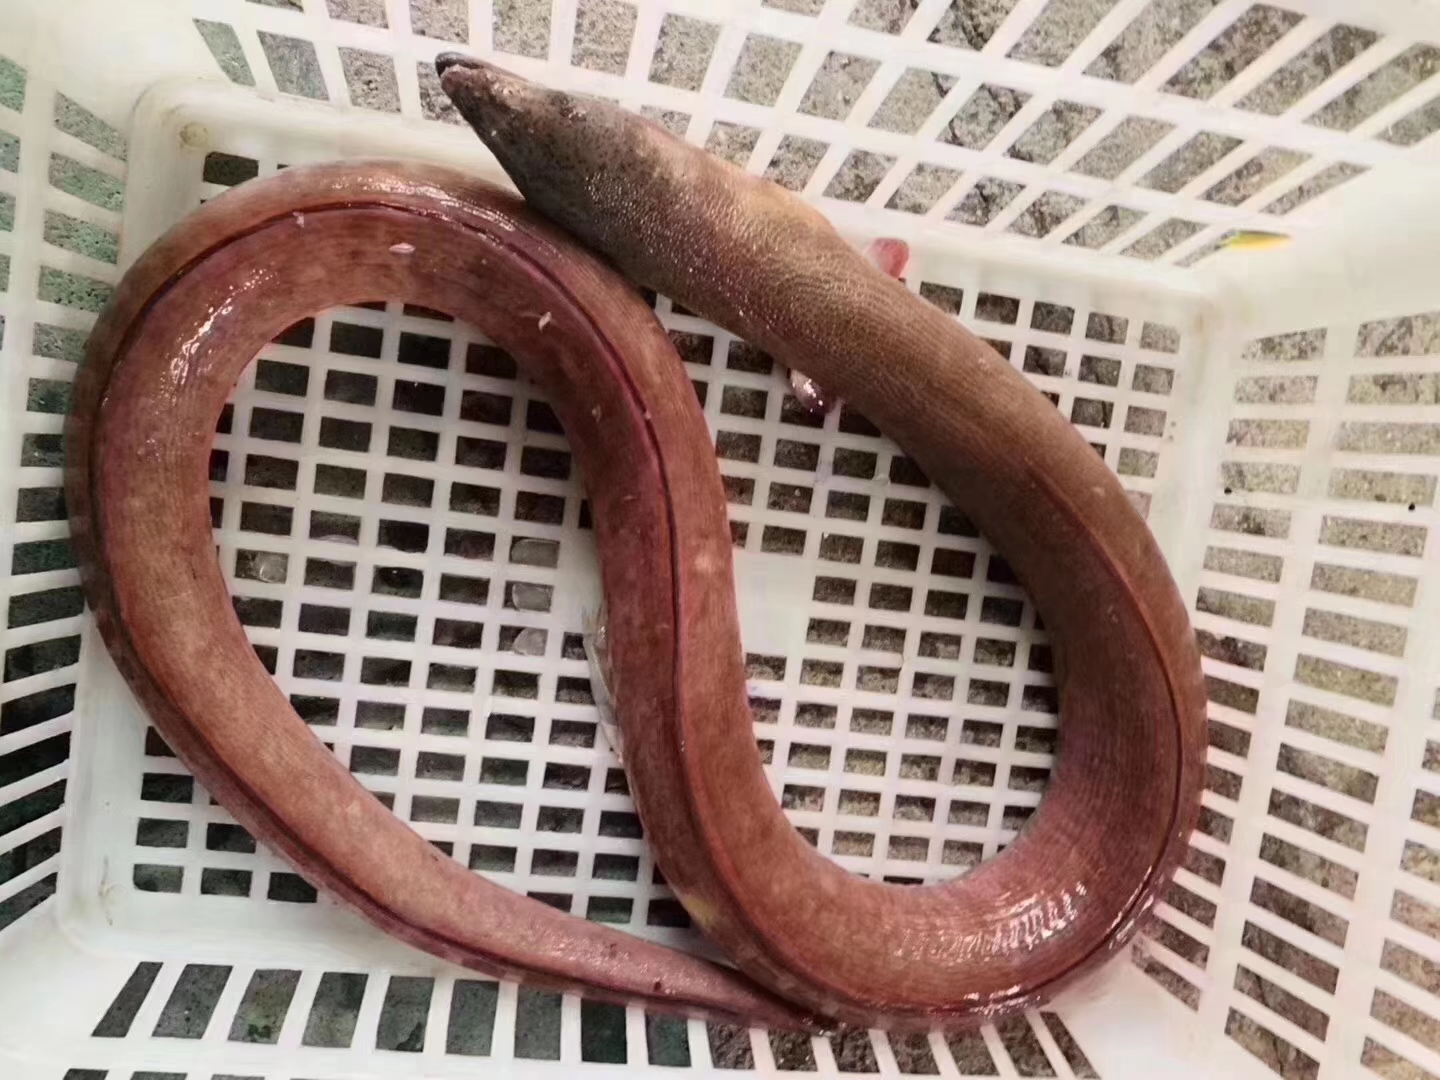 土龙是什么土龙它的学名叫波露豆齿蛇鳗是很好的滋养补品